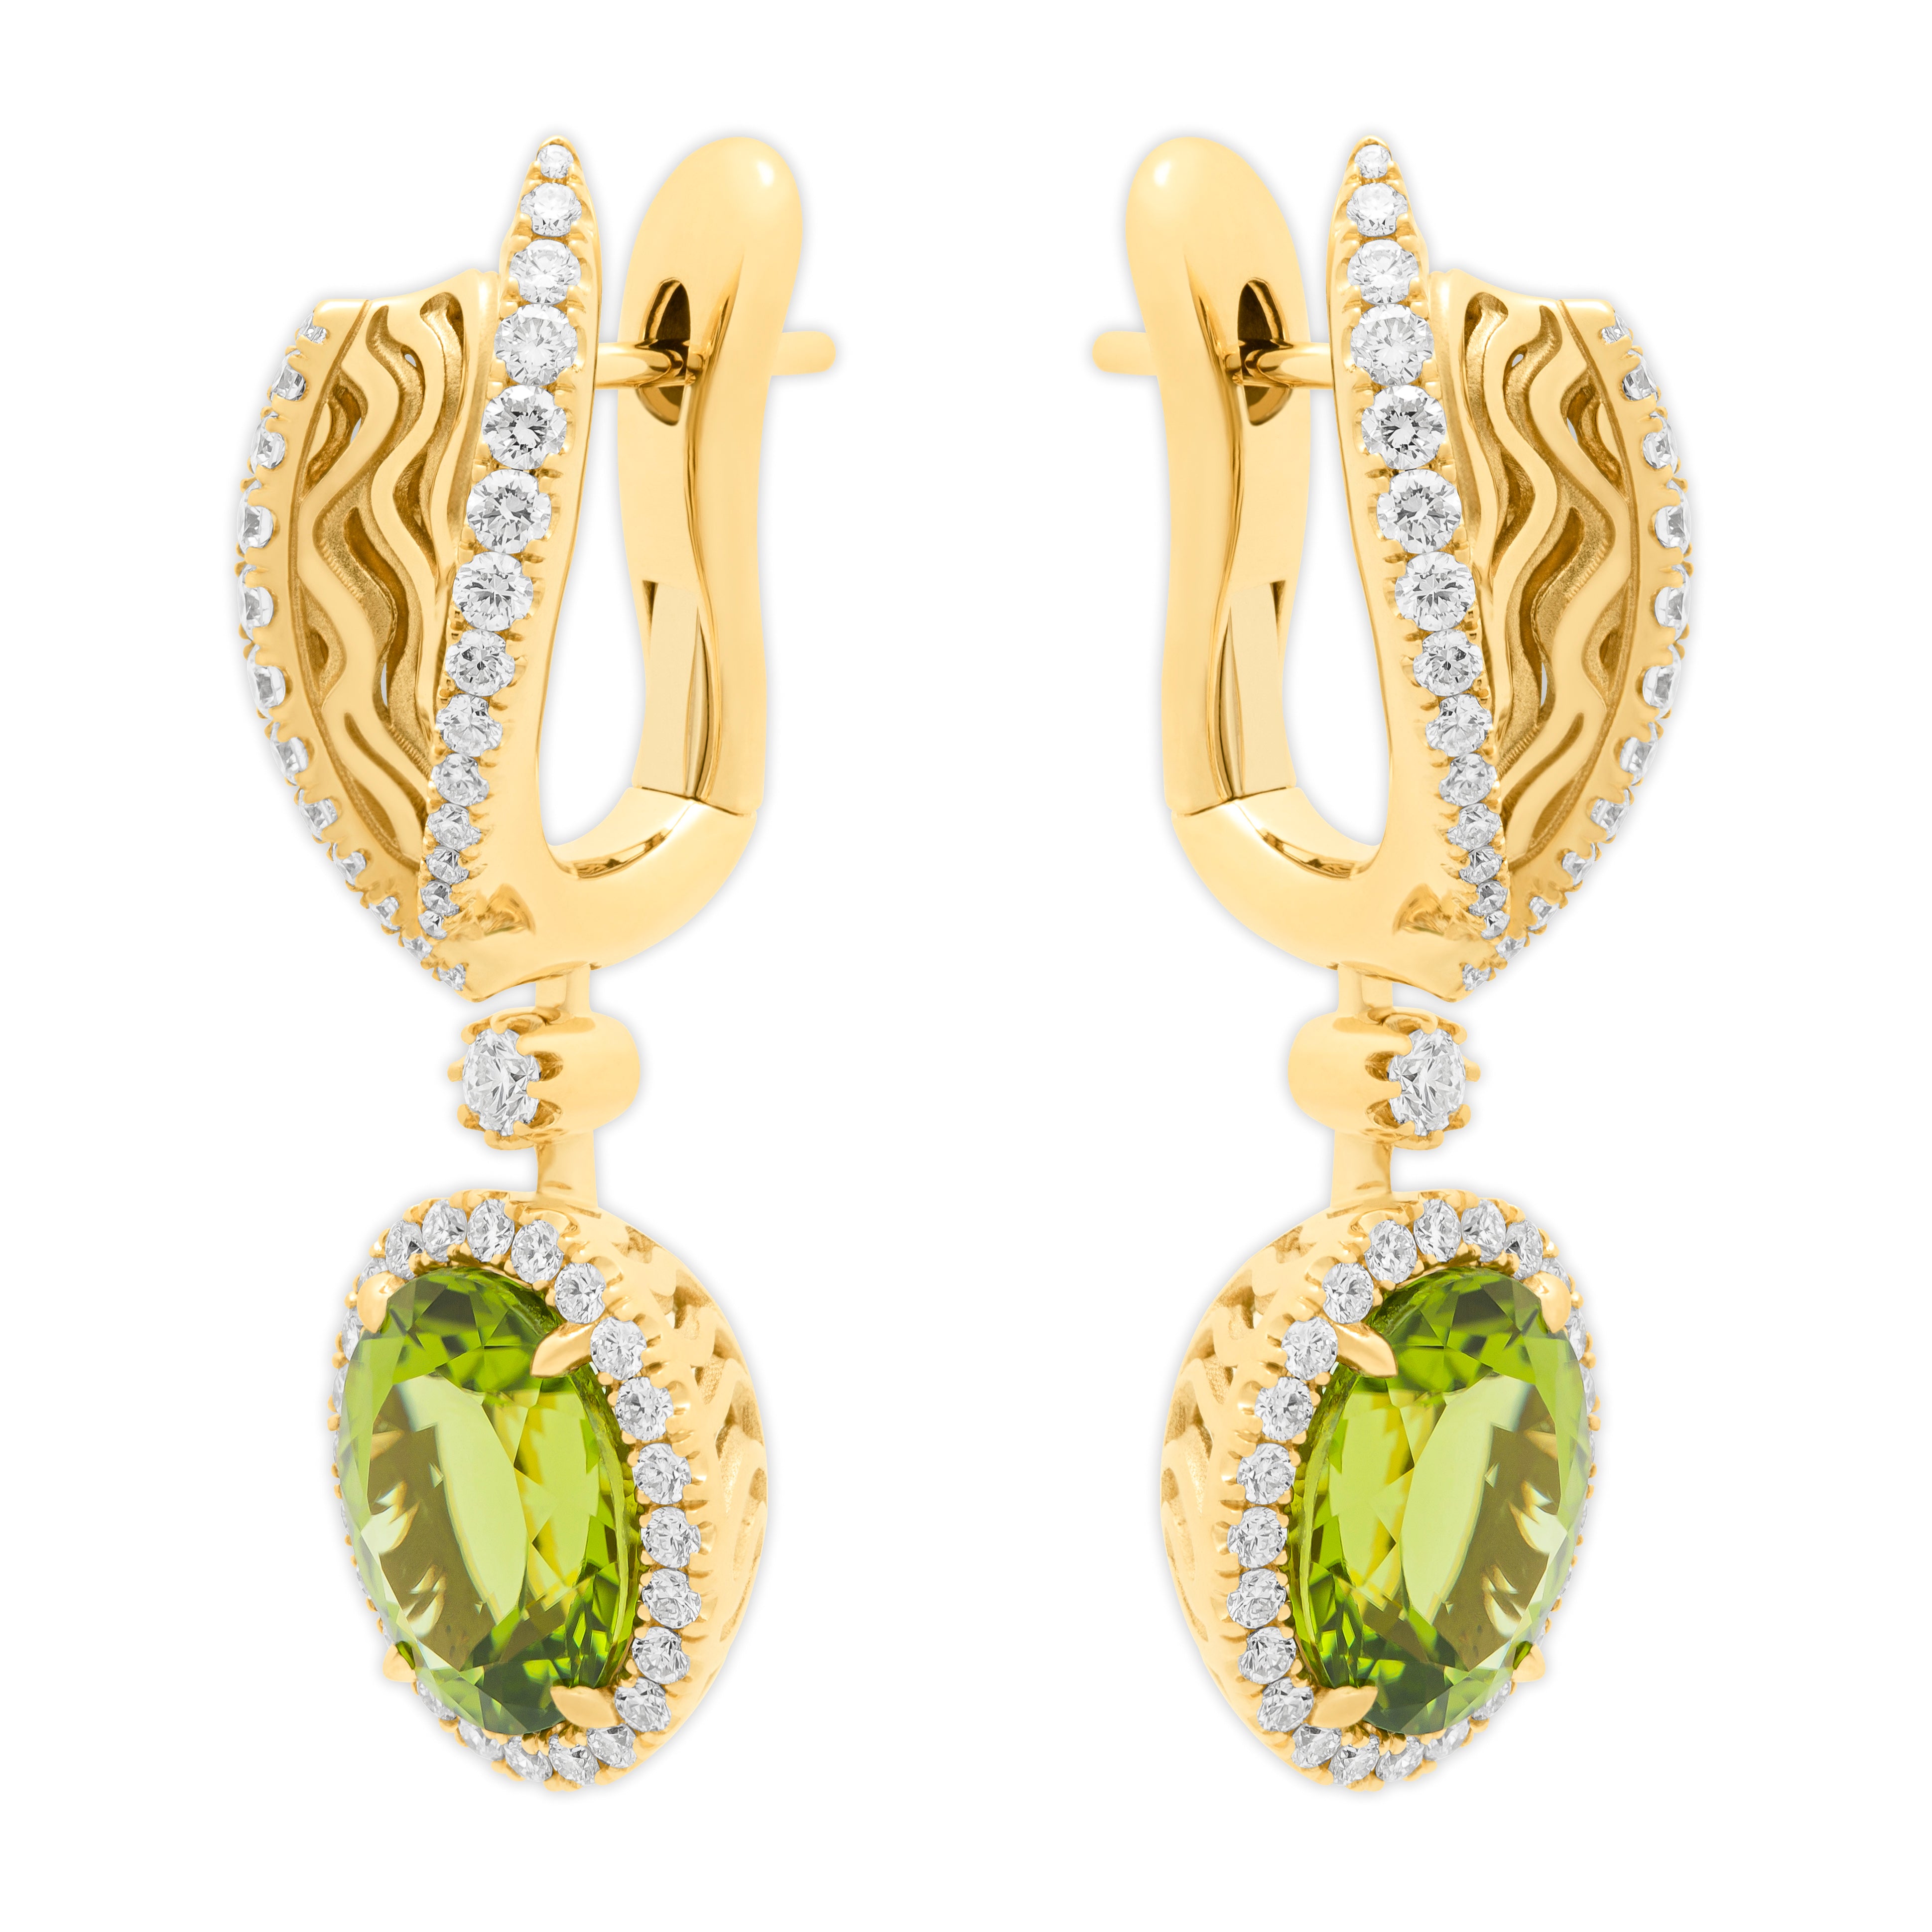 E 0144-02, 18K Yellow Gold, Peridot, Diamonds Earrings